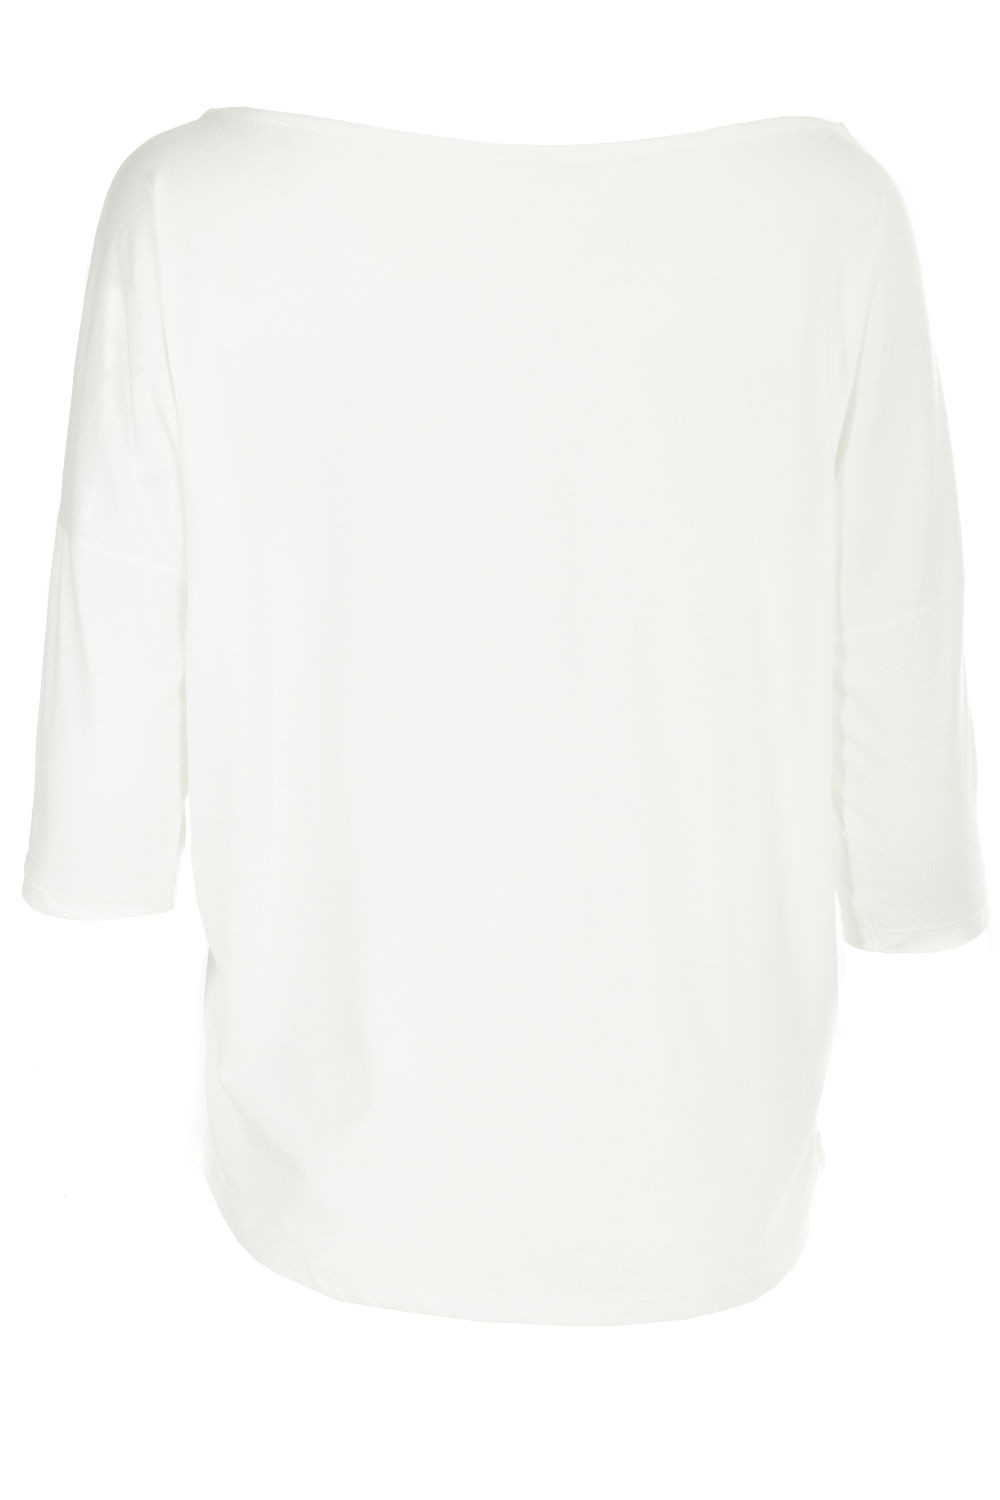 Ultra leichtes Modal-3/4-Arm weiß, Winshape vanilla Style Dance MCS001, Shirt